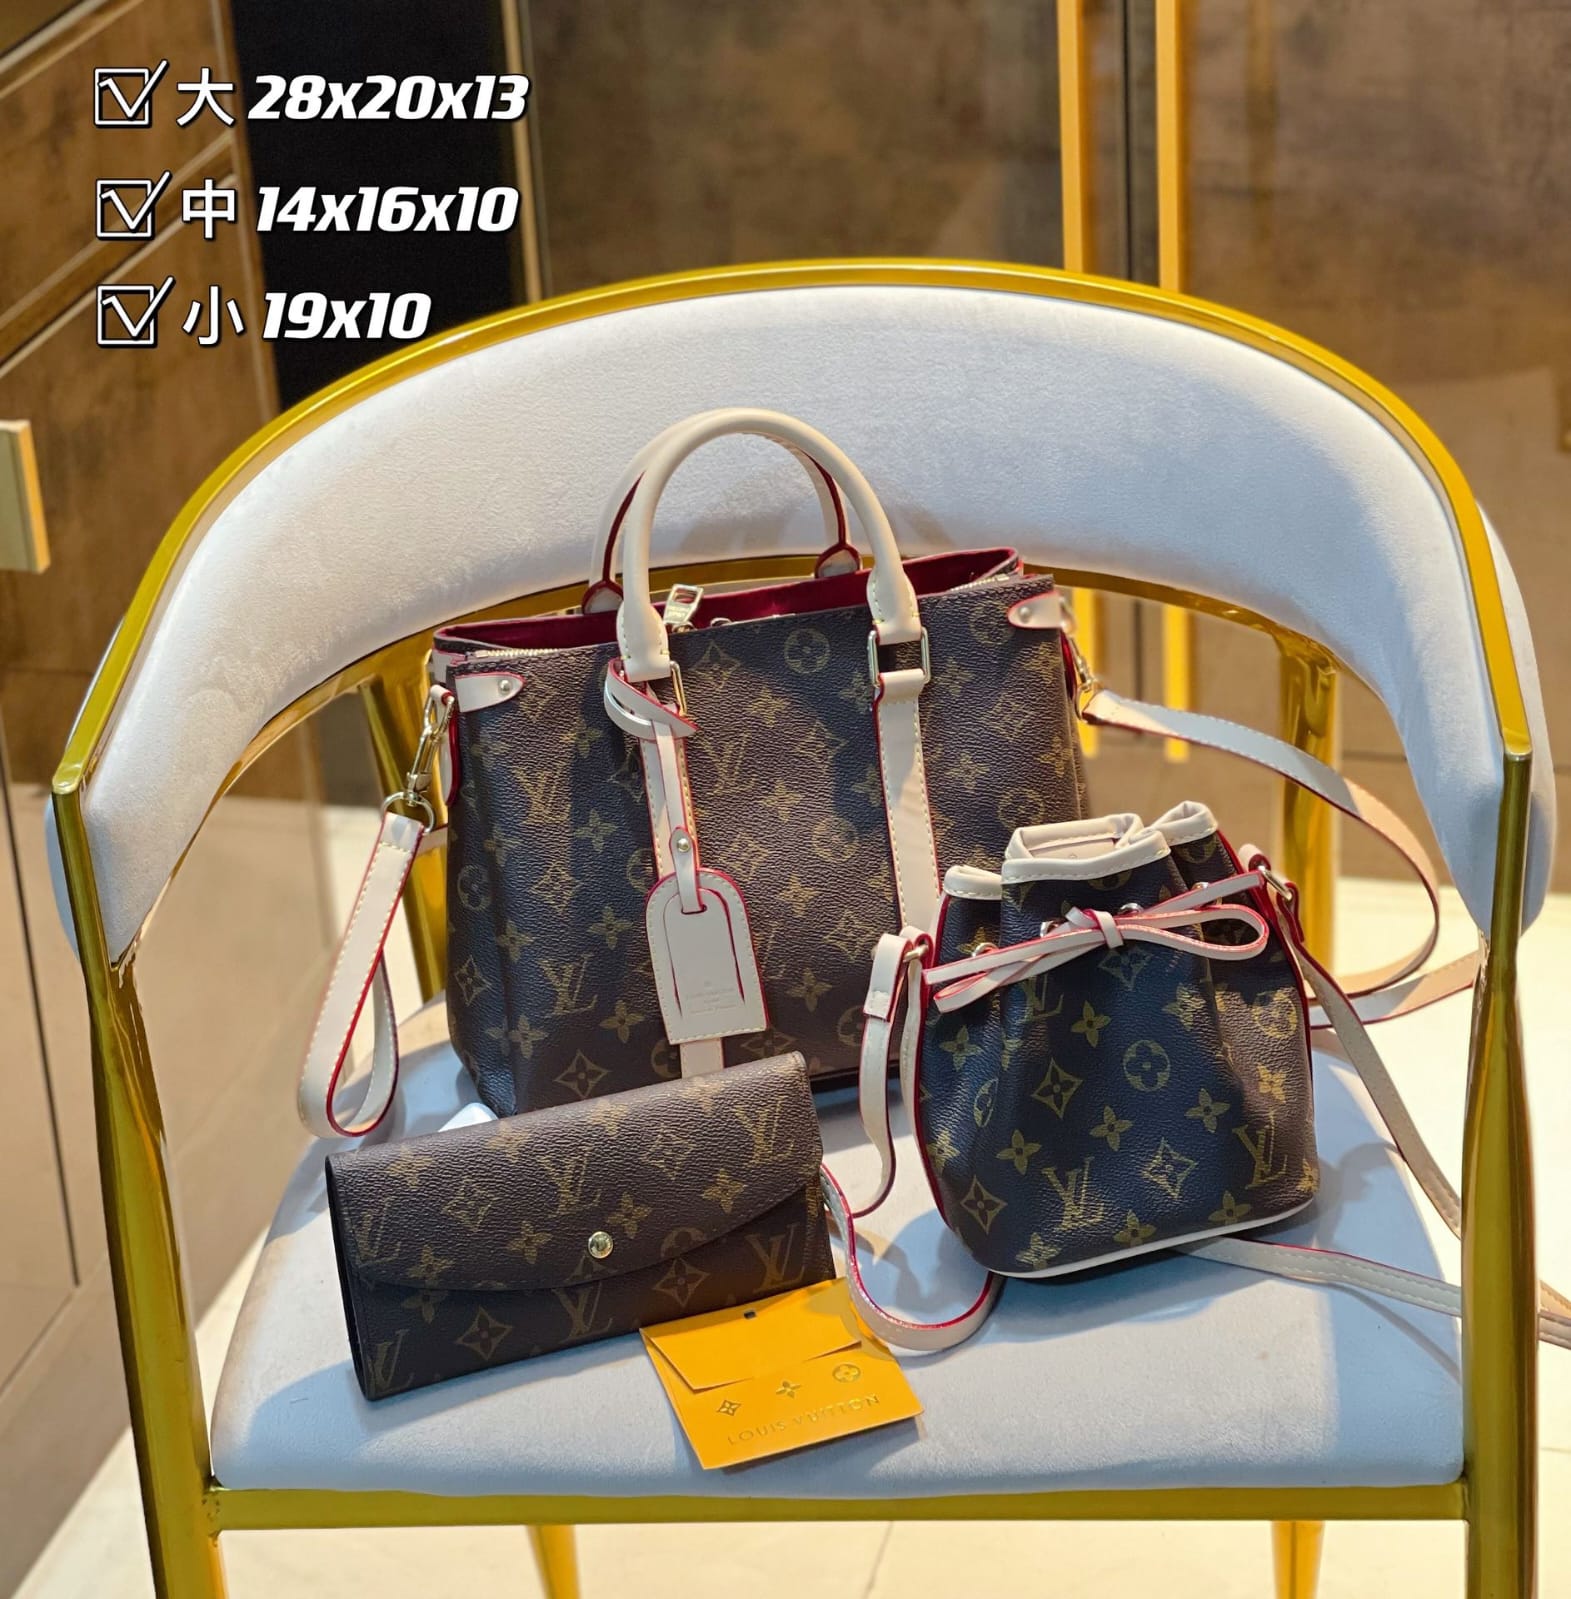 Louis Vuitton Soufflot BB Handbag Sets